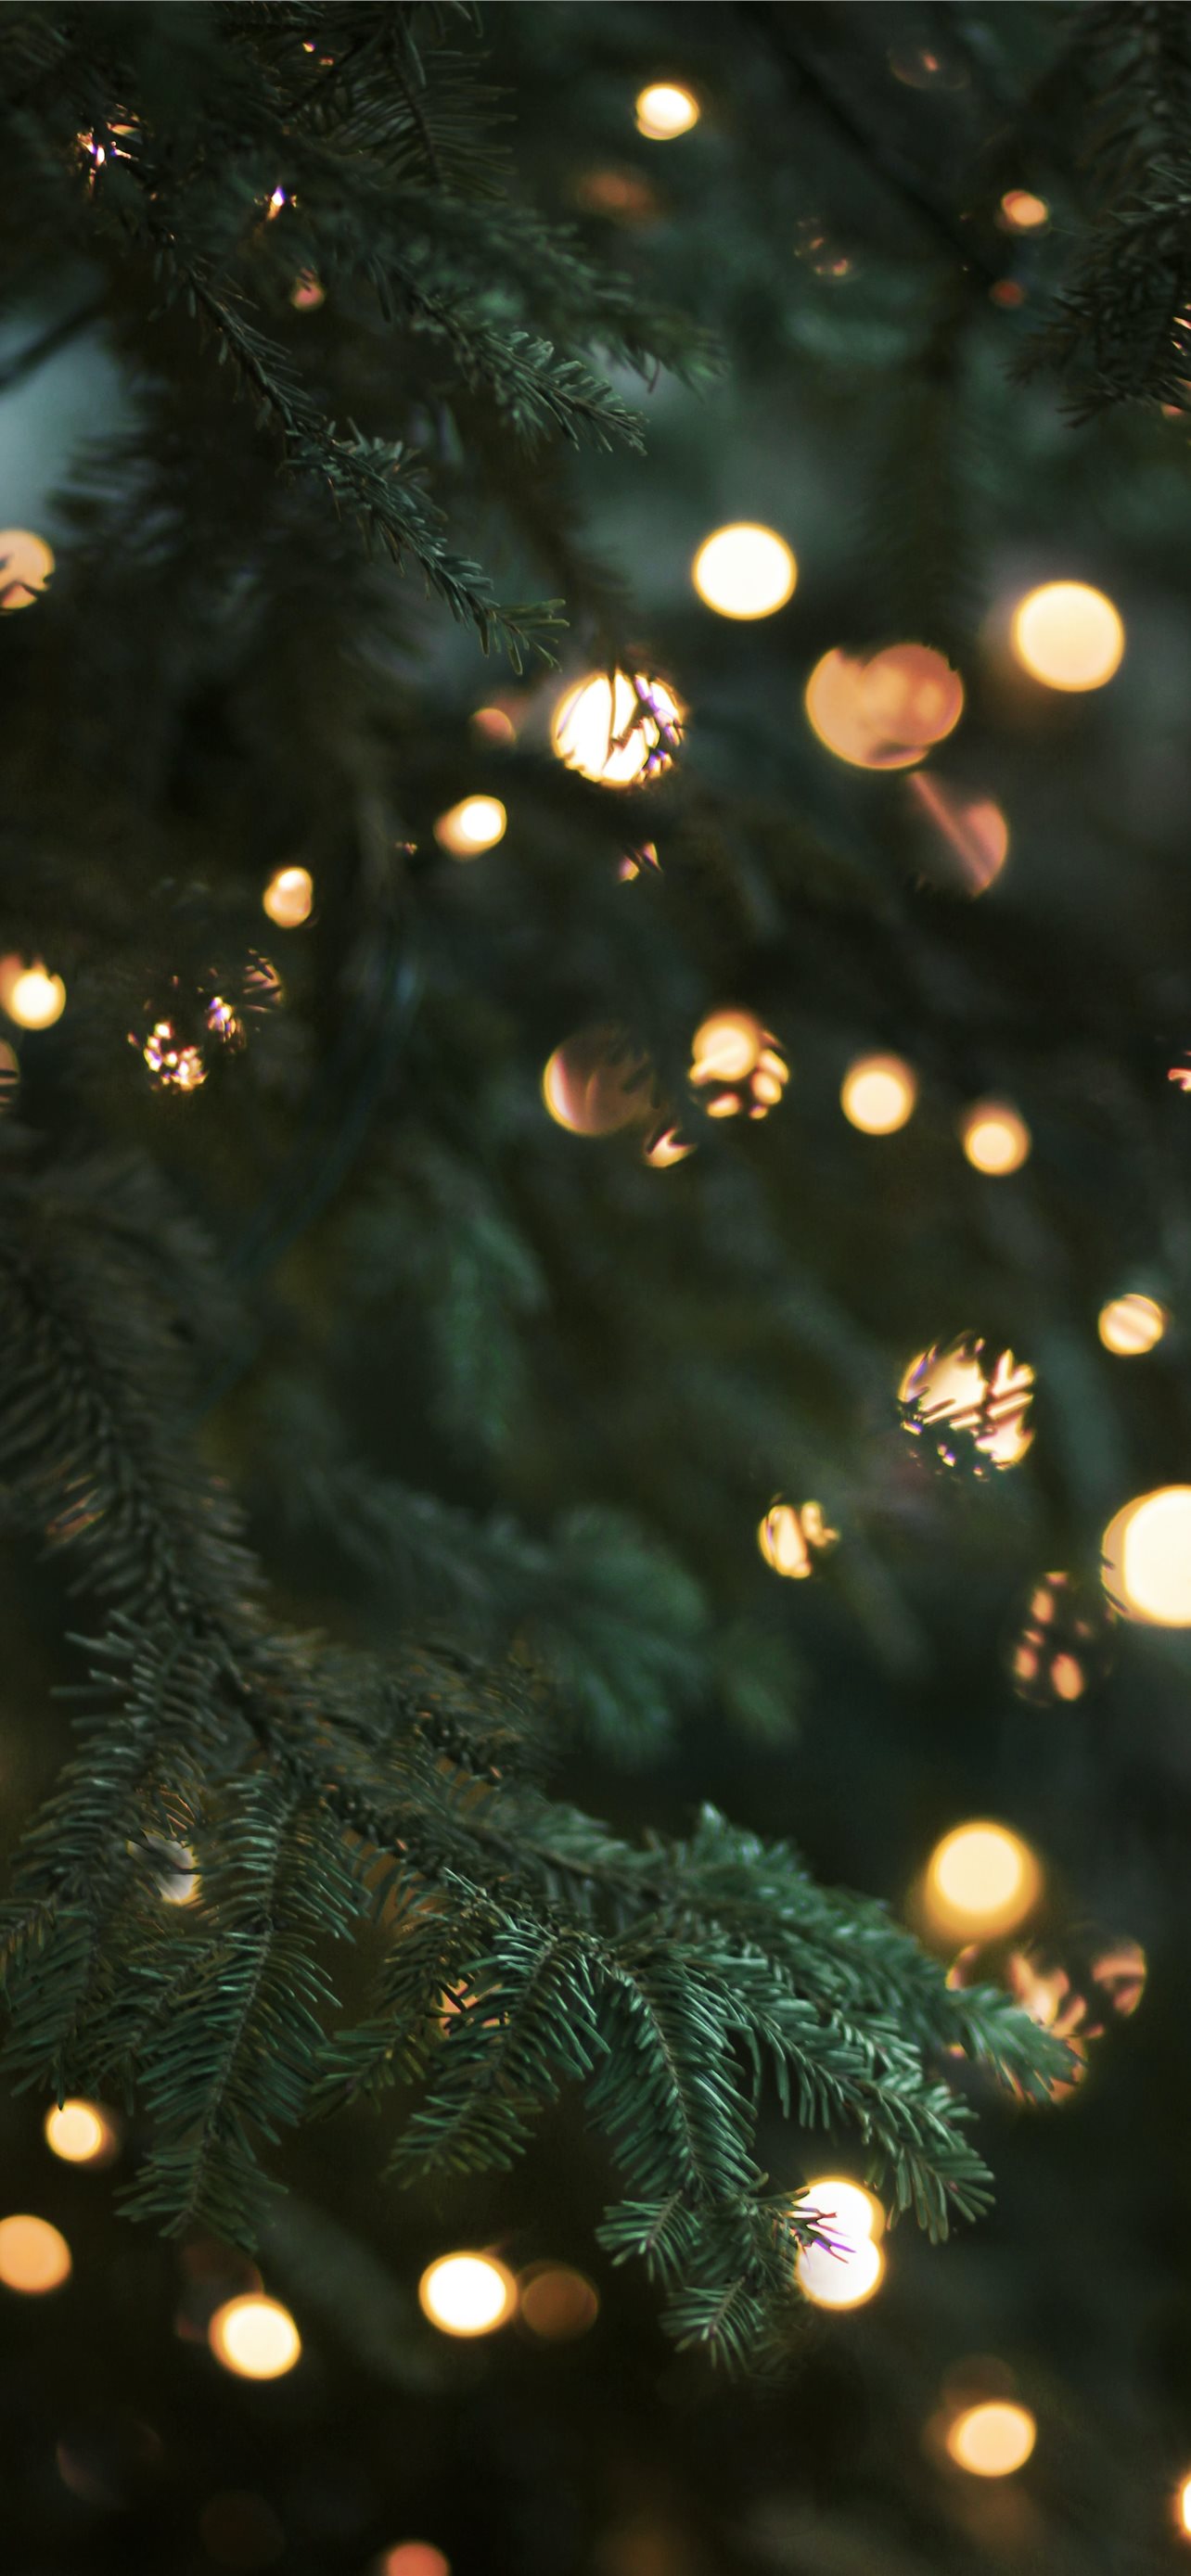 Hãy đến và tận hưởng không khí Giáng sinh tuyệt vời với đèn led cây thông Noel rực rỡ và đầy màu sắc. Ảnh sẽ đưa bạn đến một thế giới thần tiên, nơi mà niềm vui Giáng sinh được truyền tải qua cảm giác thị giác. Đừng bỏ lỡ cơ hội để trải nghiệm cảm giác đầy ấn tượng với đèn led cây thông Noel này. 